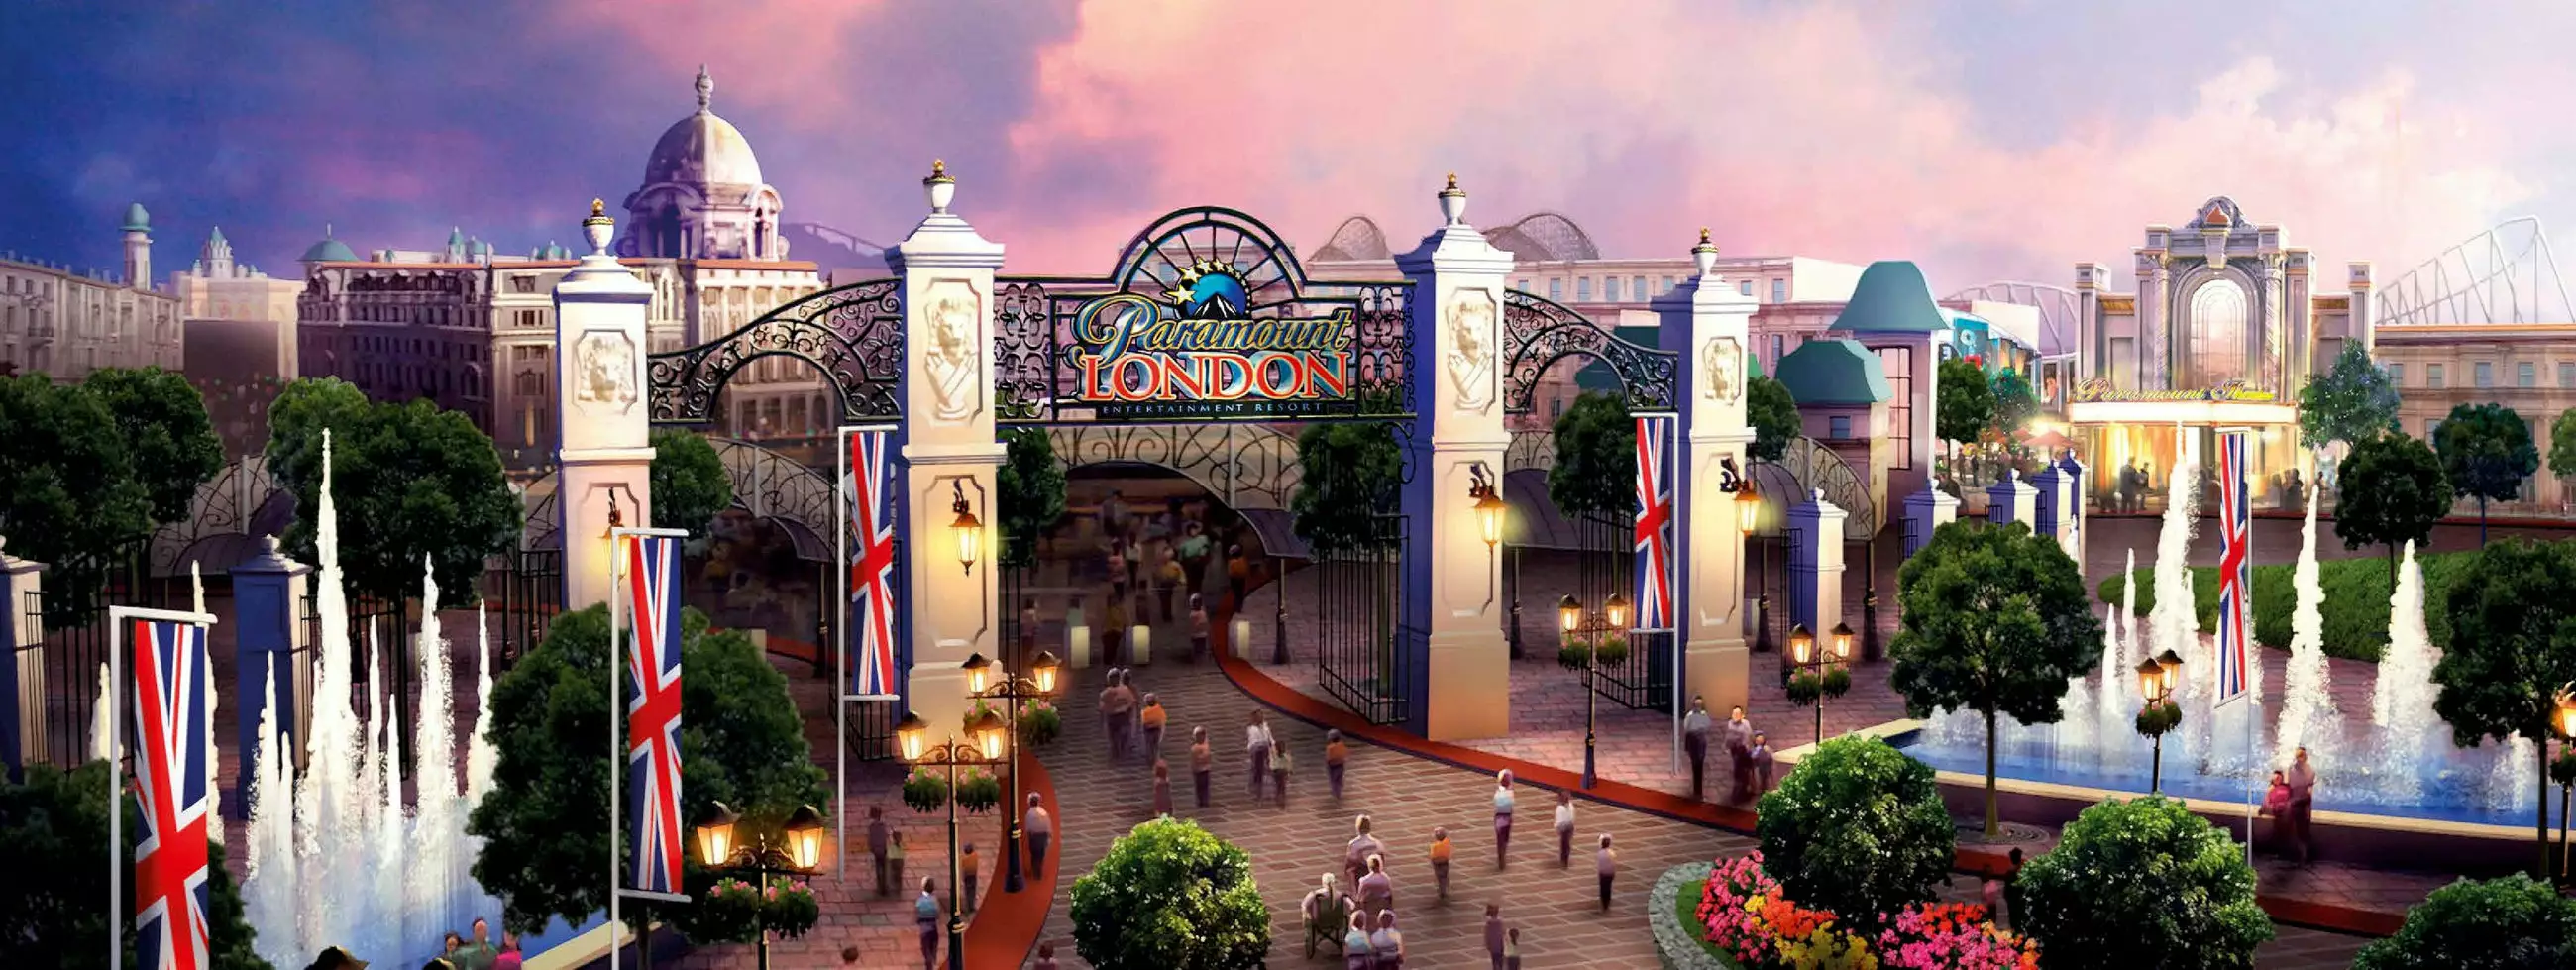 British 'Disneyland' Is Set To Open In 2021